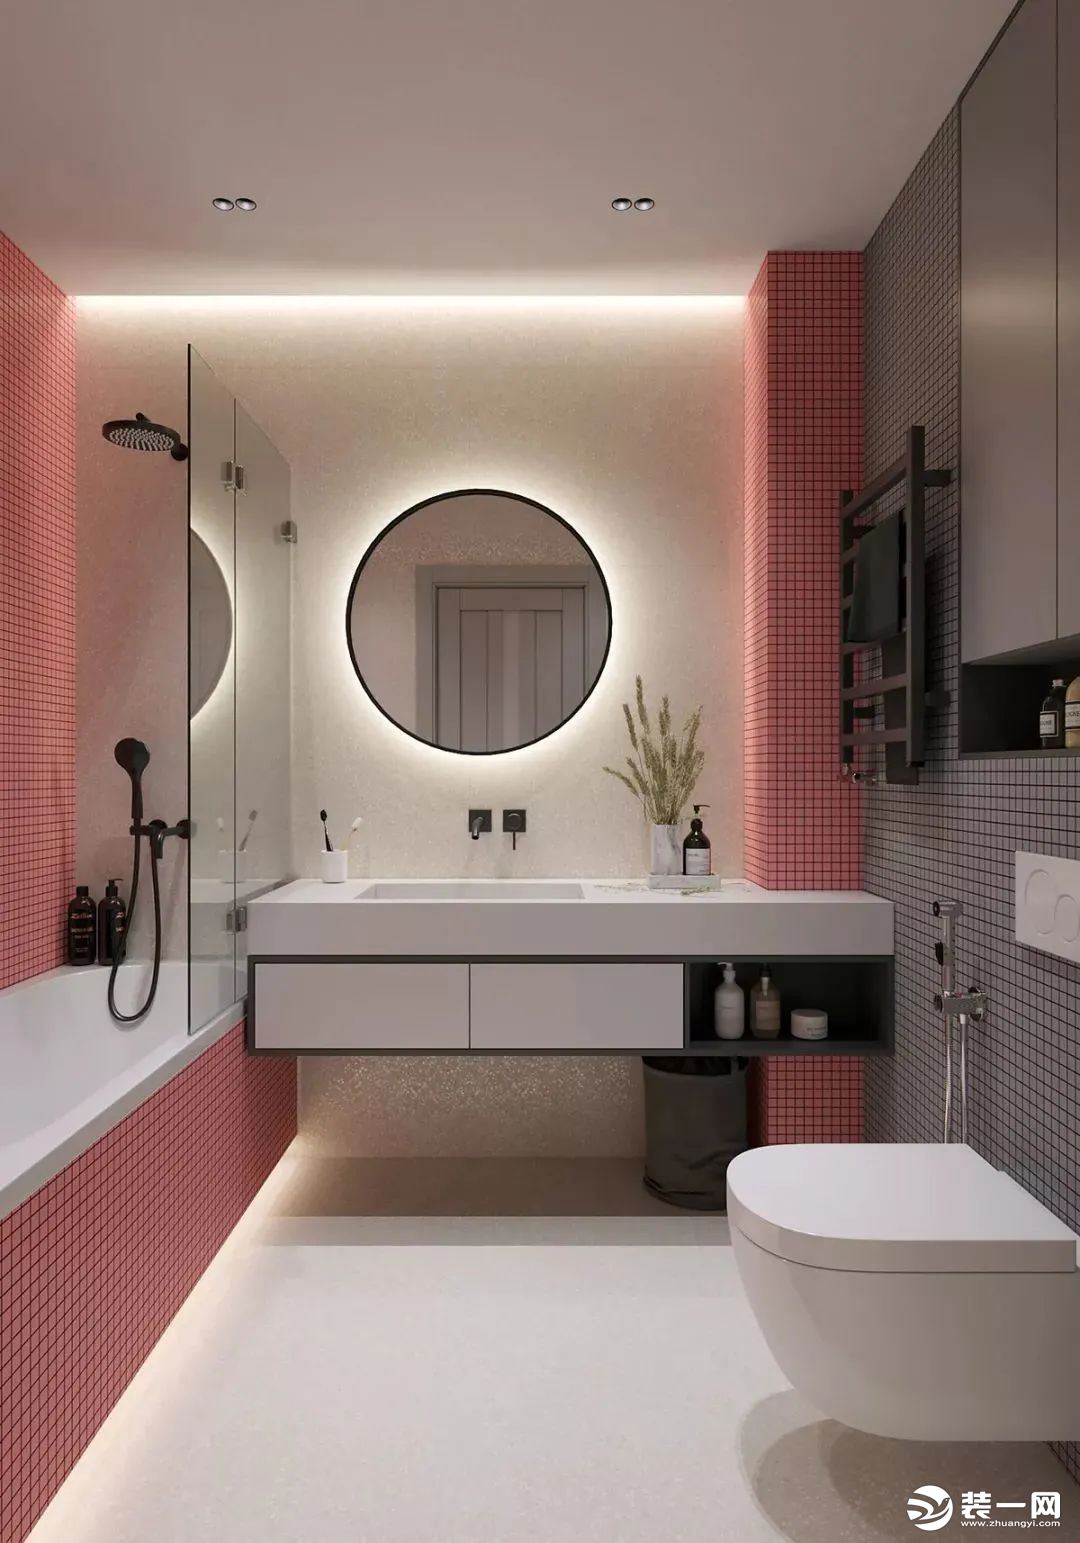 主卫空间设置了浴缸、洗手盆与马桶，墙面以粉色、灰色的马赛克砖粘贴，洗手盆是大理石材质的定制设计，墙面